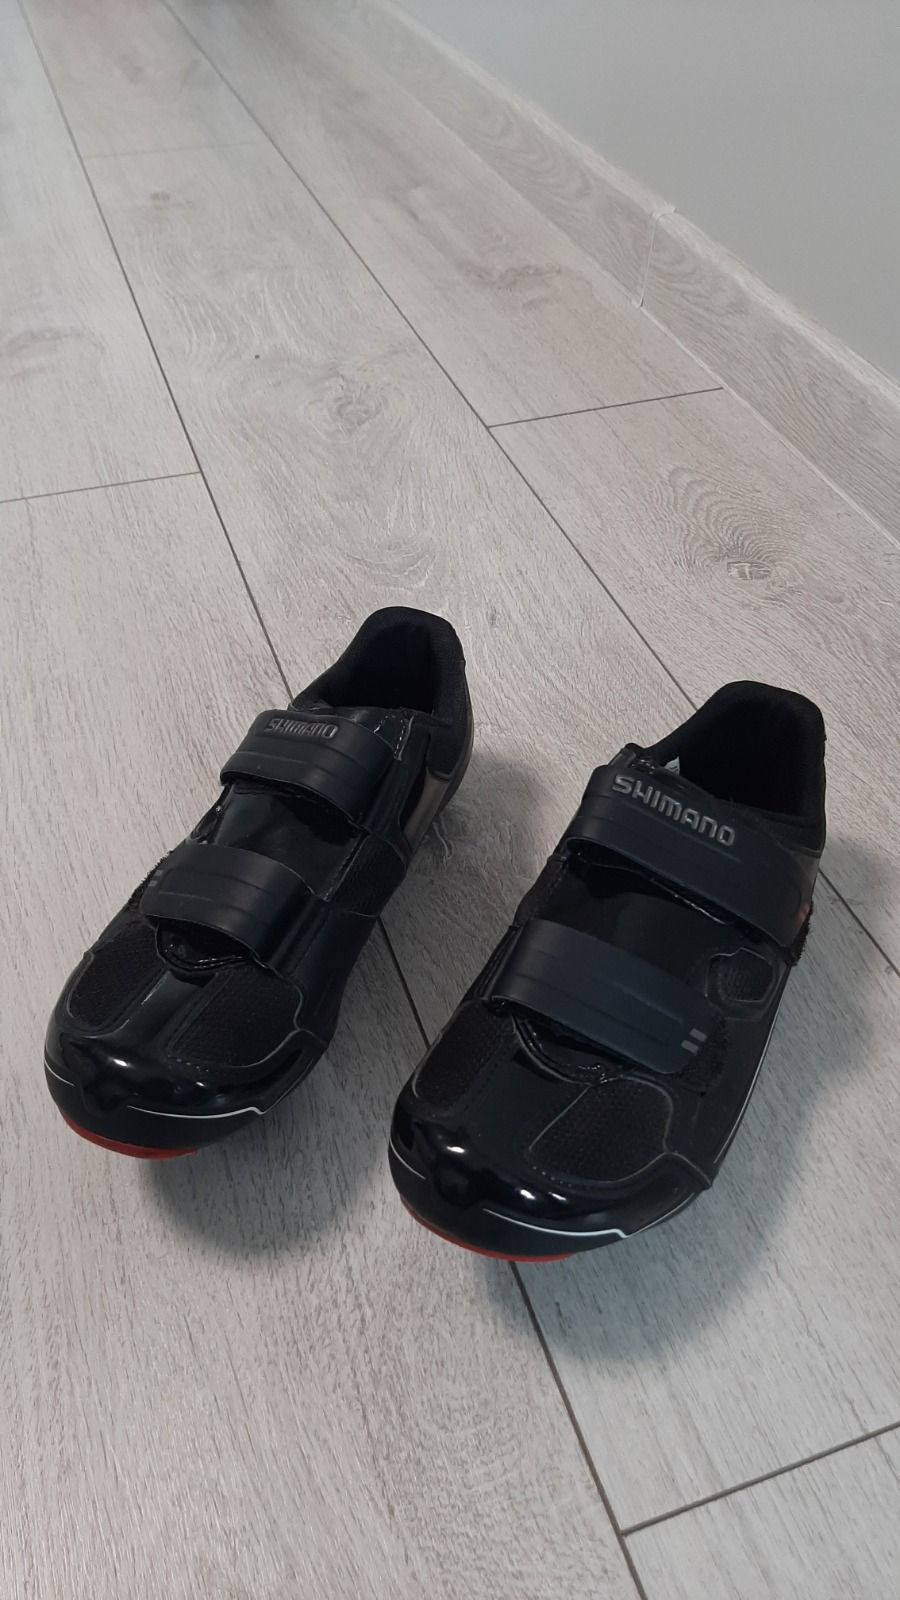 Контактные туфли SHIMANO SH-R065L BLACK. Цена 45$